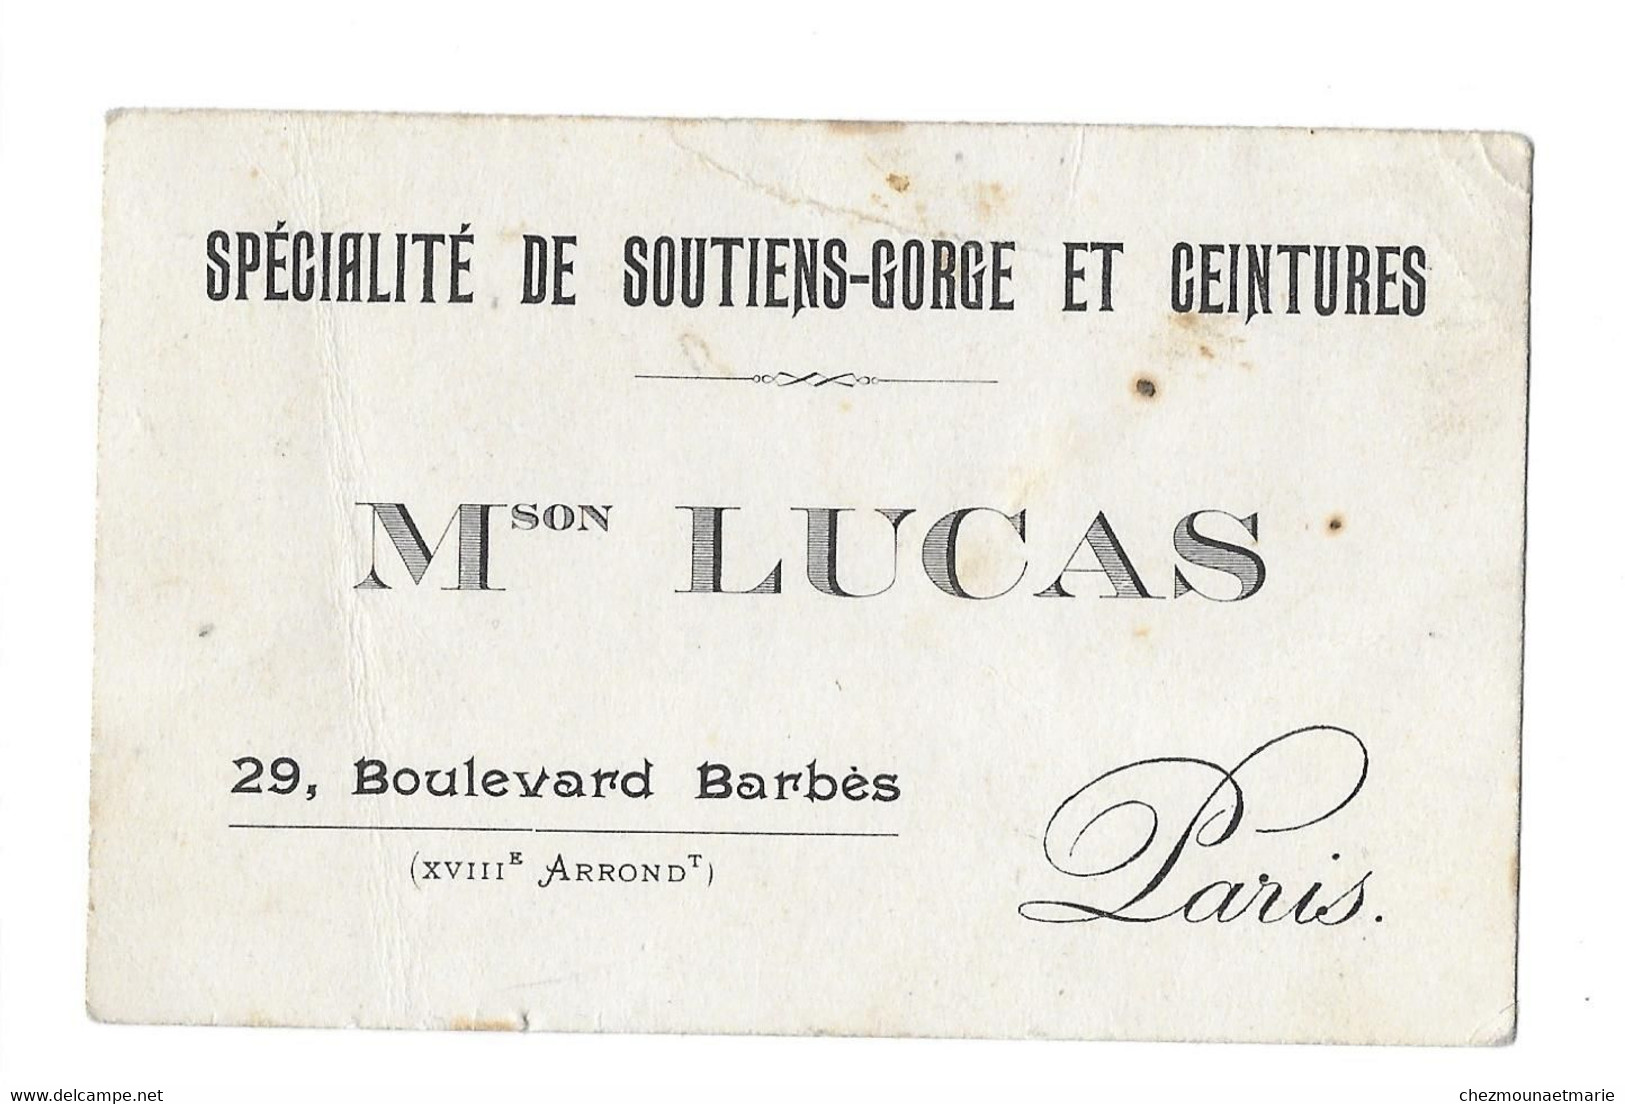 PARIS 29 BLVD BARBES - MAISON LUCAS SPECIALITE DE SOUTIENS GORGE ET CEINTURES - CDV - Cartes De Visite